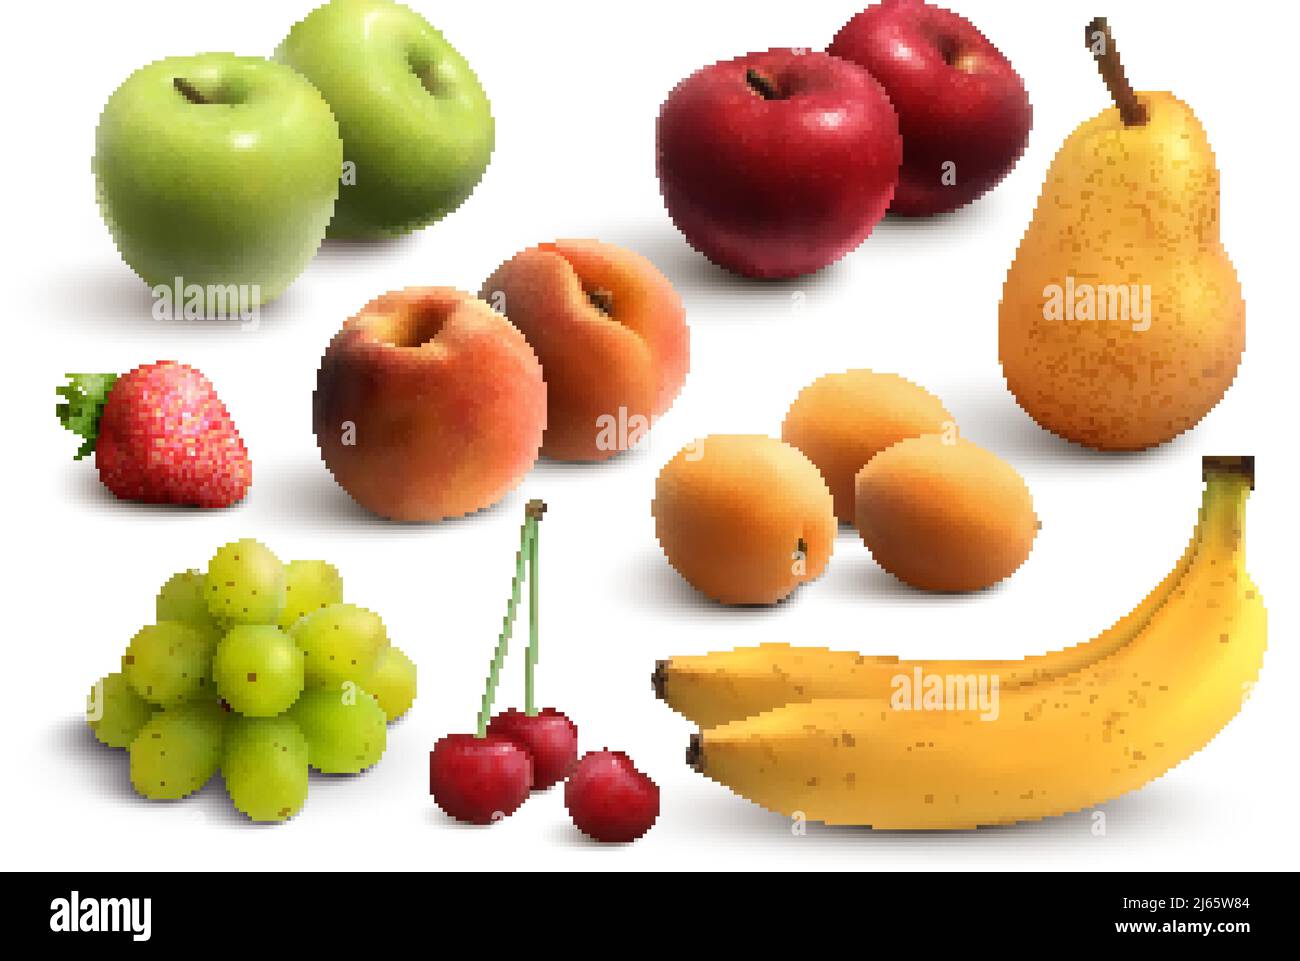 Frutta set realistico con mele verdi e rosse banane pere mazzetto di uva pesca albicocca isolato vettore illustrazione Illustrazione Vettoriale